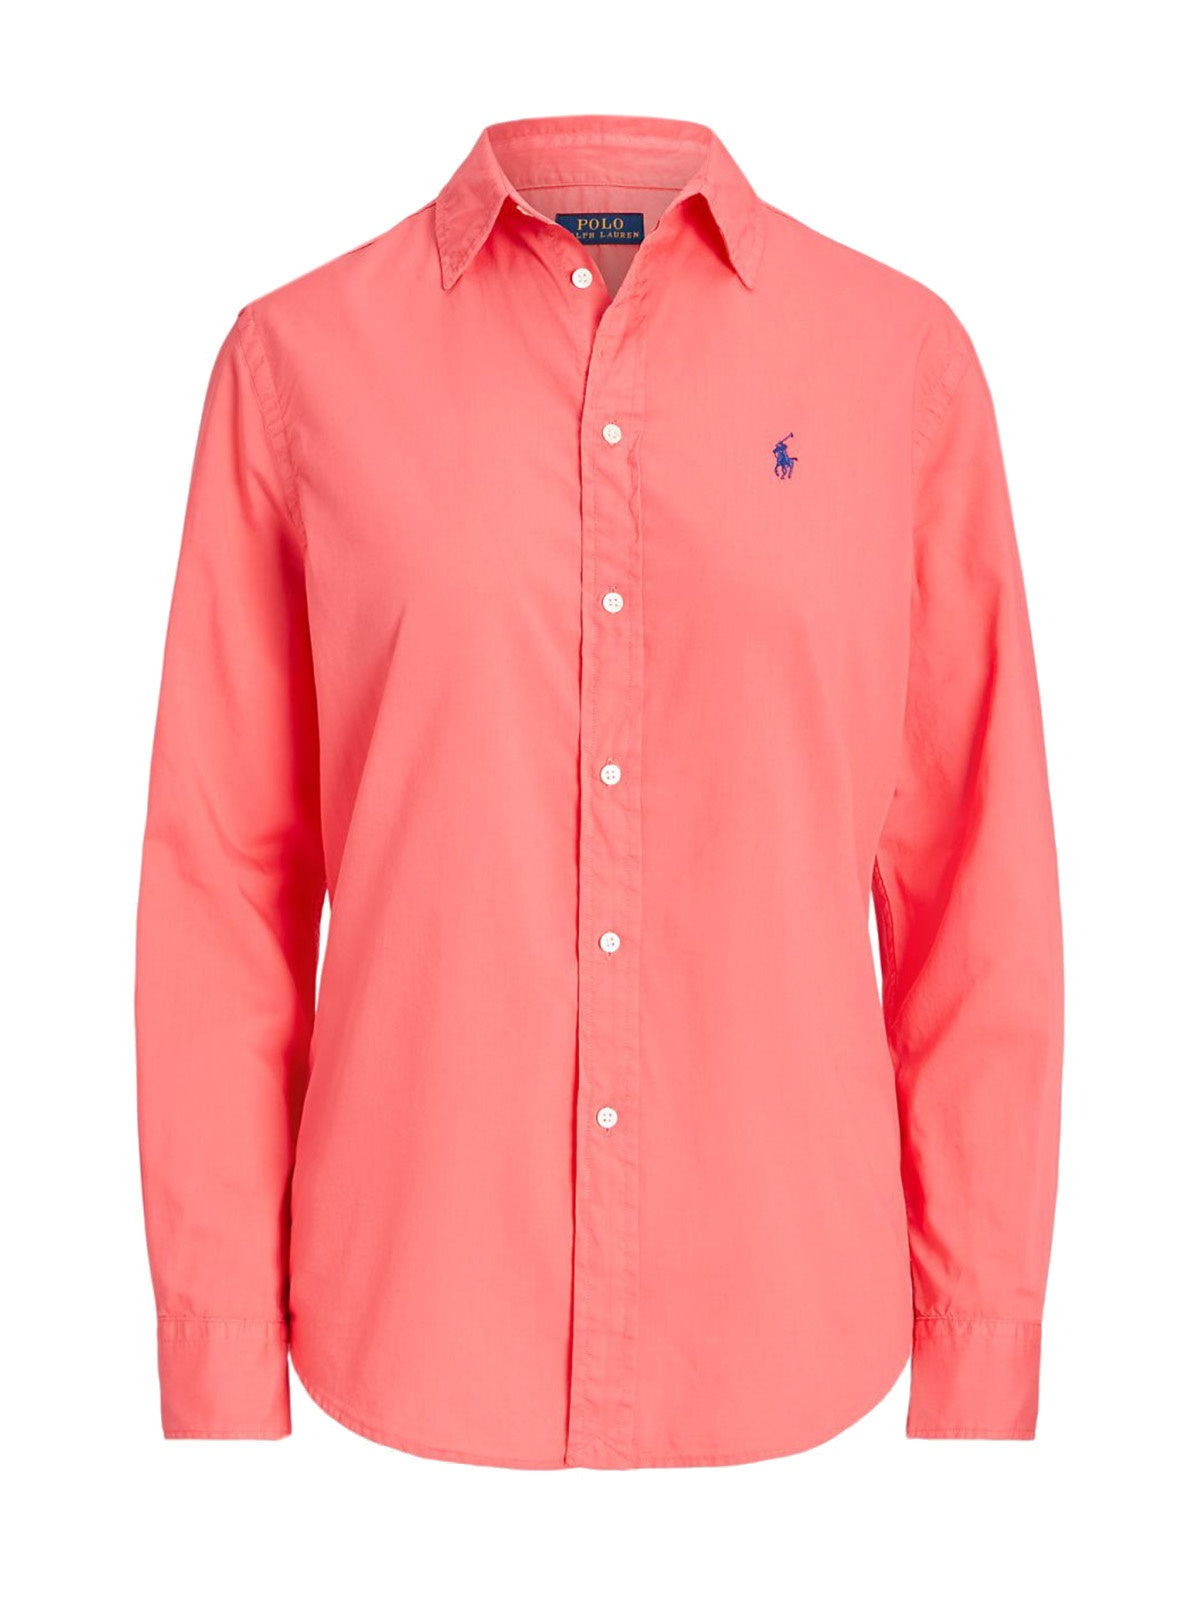 Bluse e camicie Donna Ralph Lauren - Camicia Oversize In Twill Di Cotone - Rosso